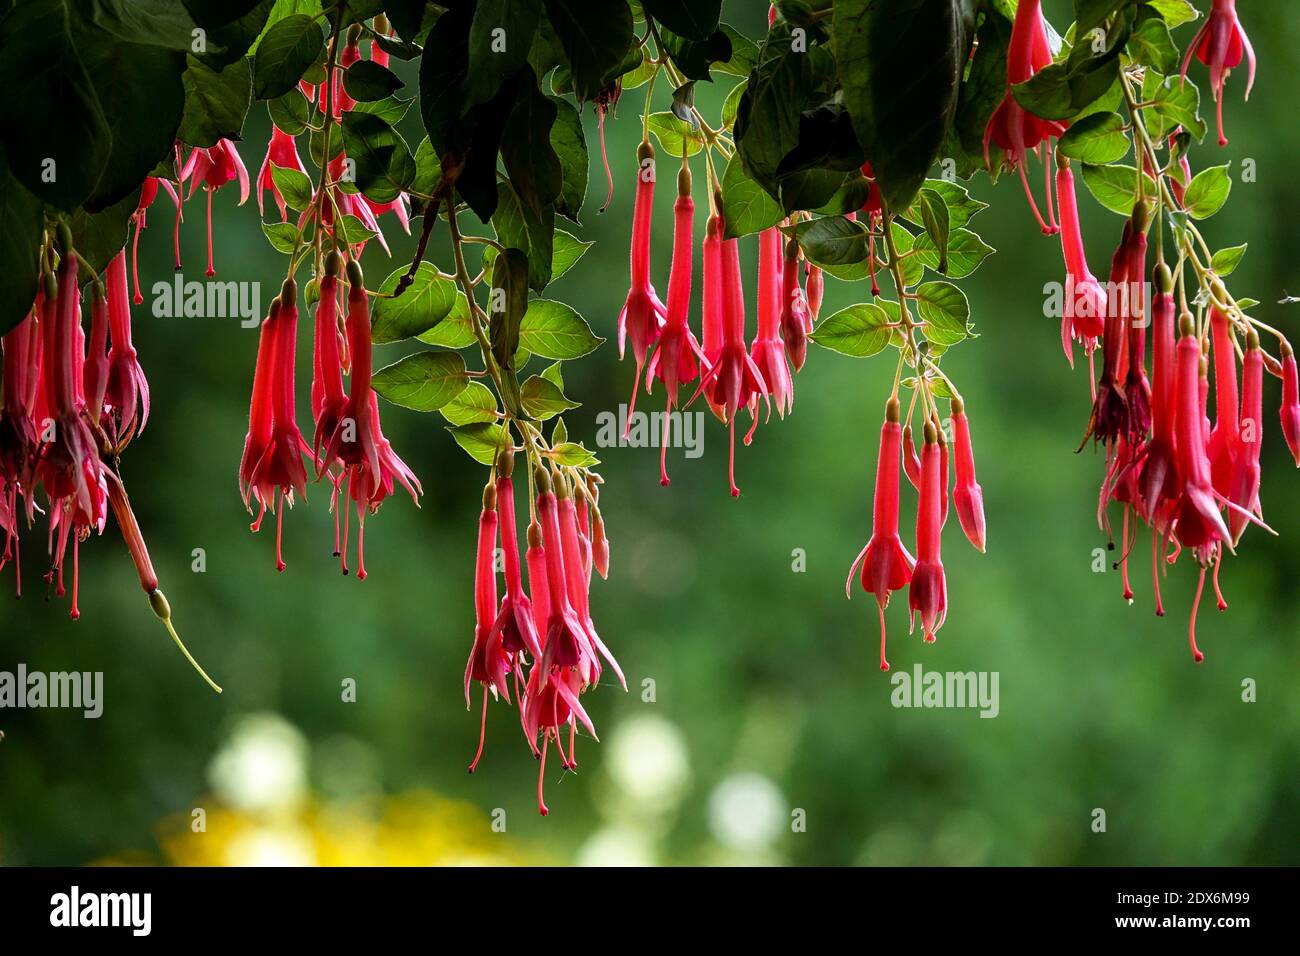 Flores rojas colgando en la planta verde en el jardín de verano, fondo borroso Foto de stock